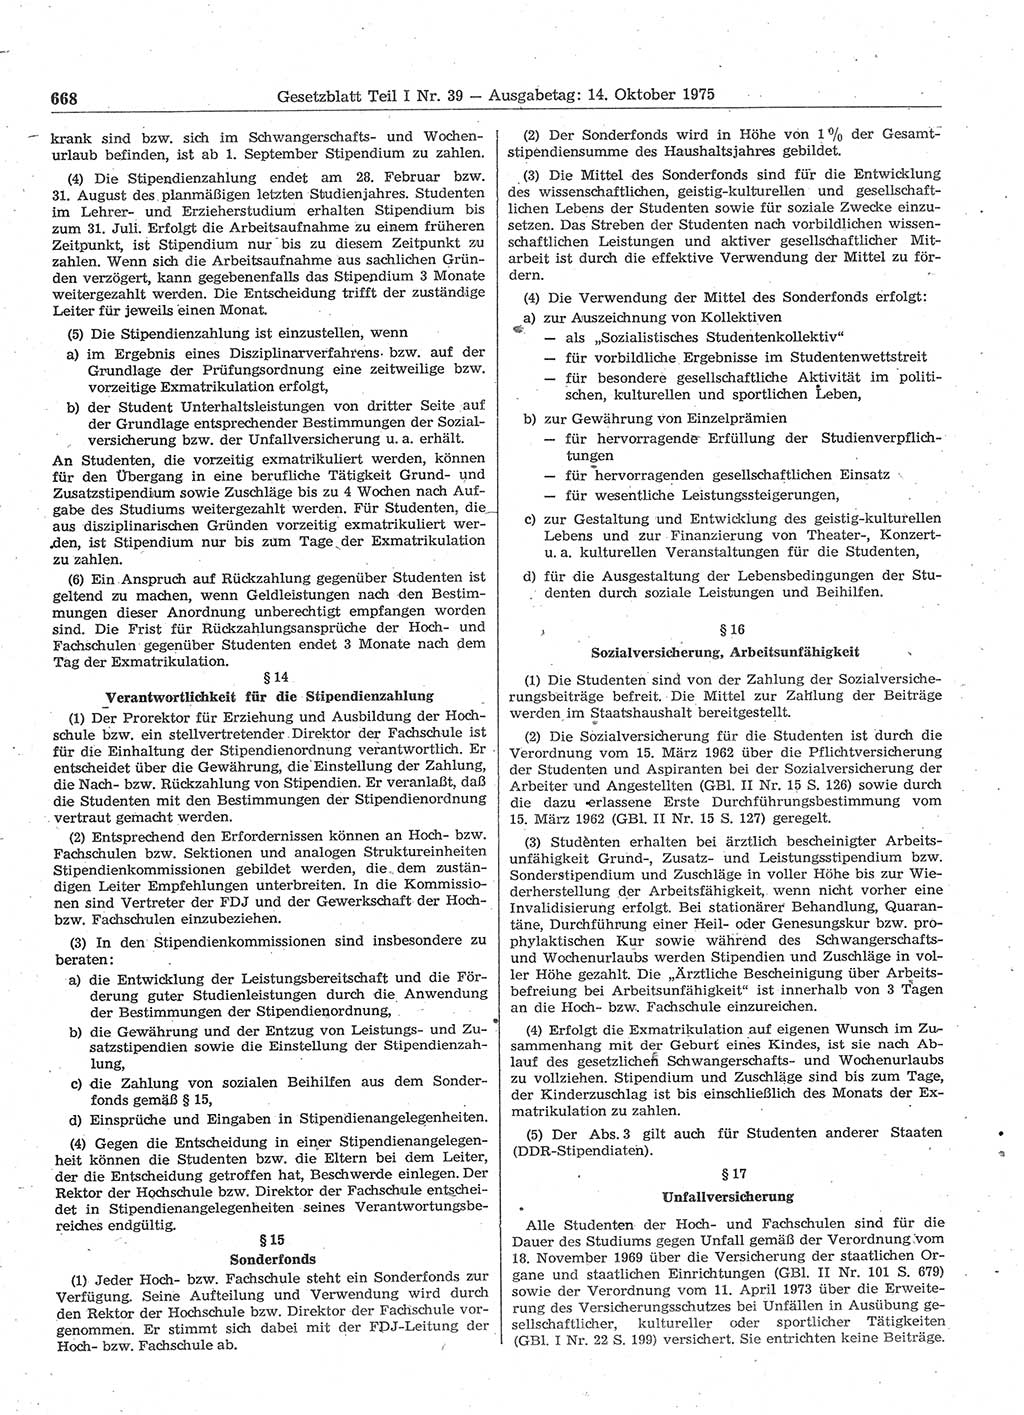 Gesetzblatt (GBl.) der Deutschen Demokratischen Republik (DDR) Teil Ⅰ 1975, Seite 668 (GBl. DDR Ⅰ 1975, S. 668)